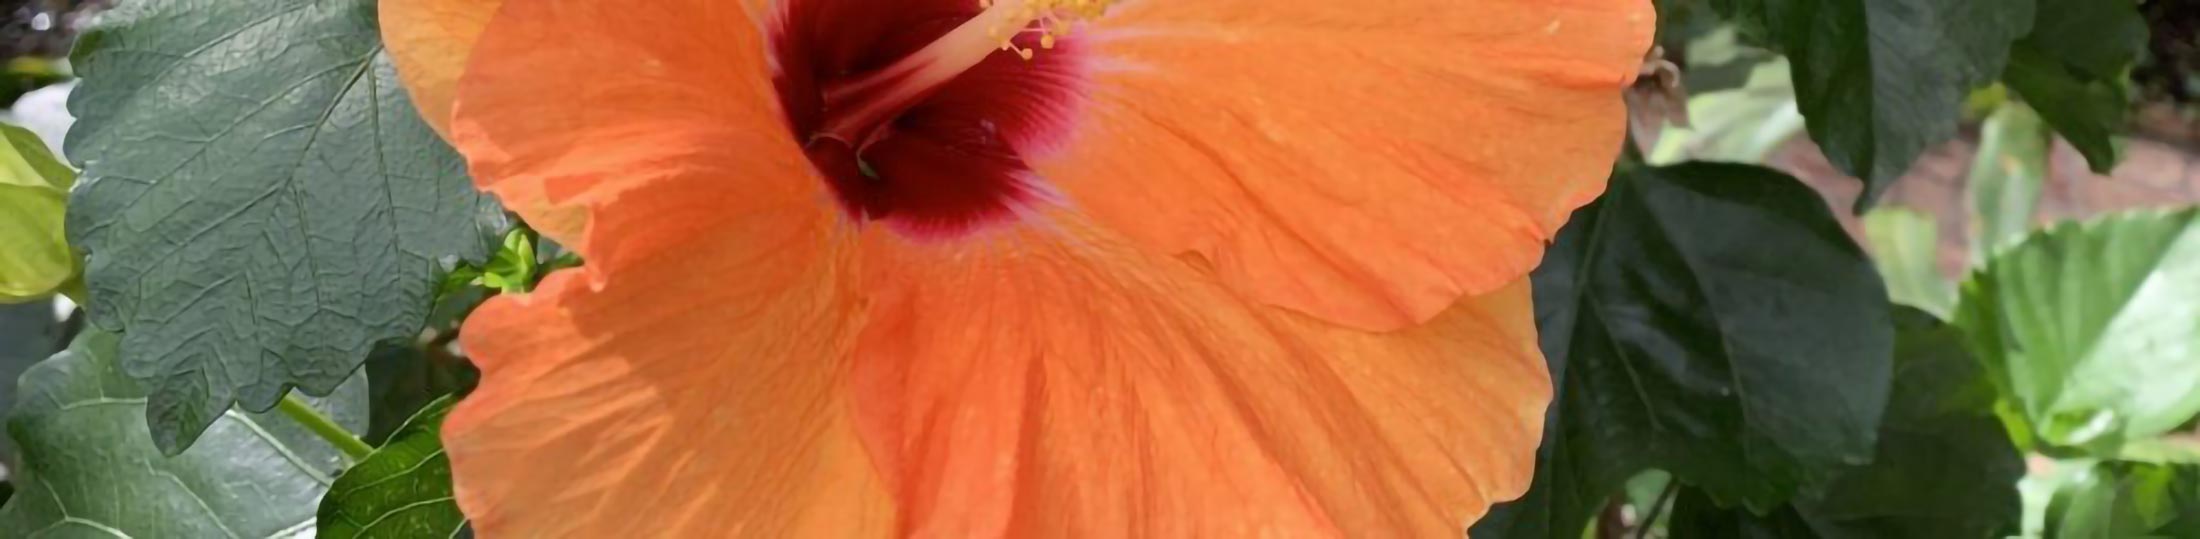 Closeup of a bright tropical flower